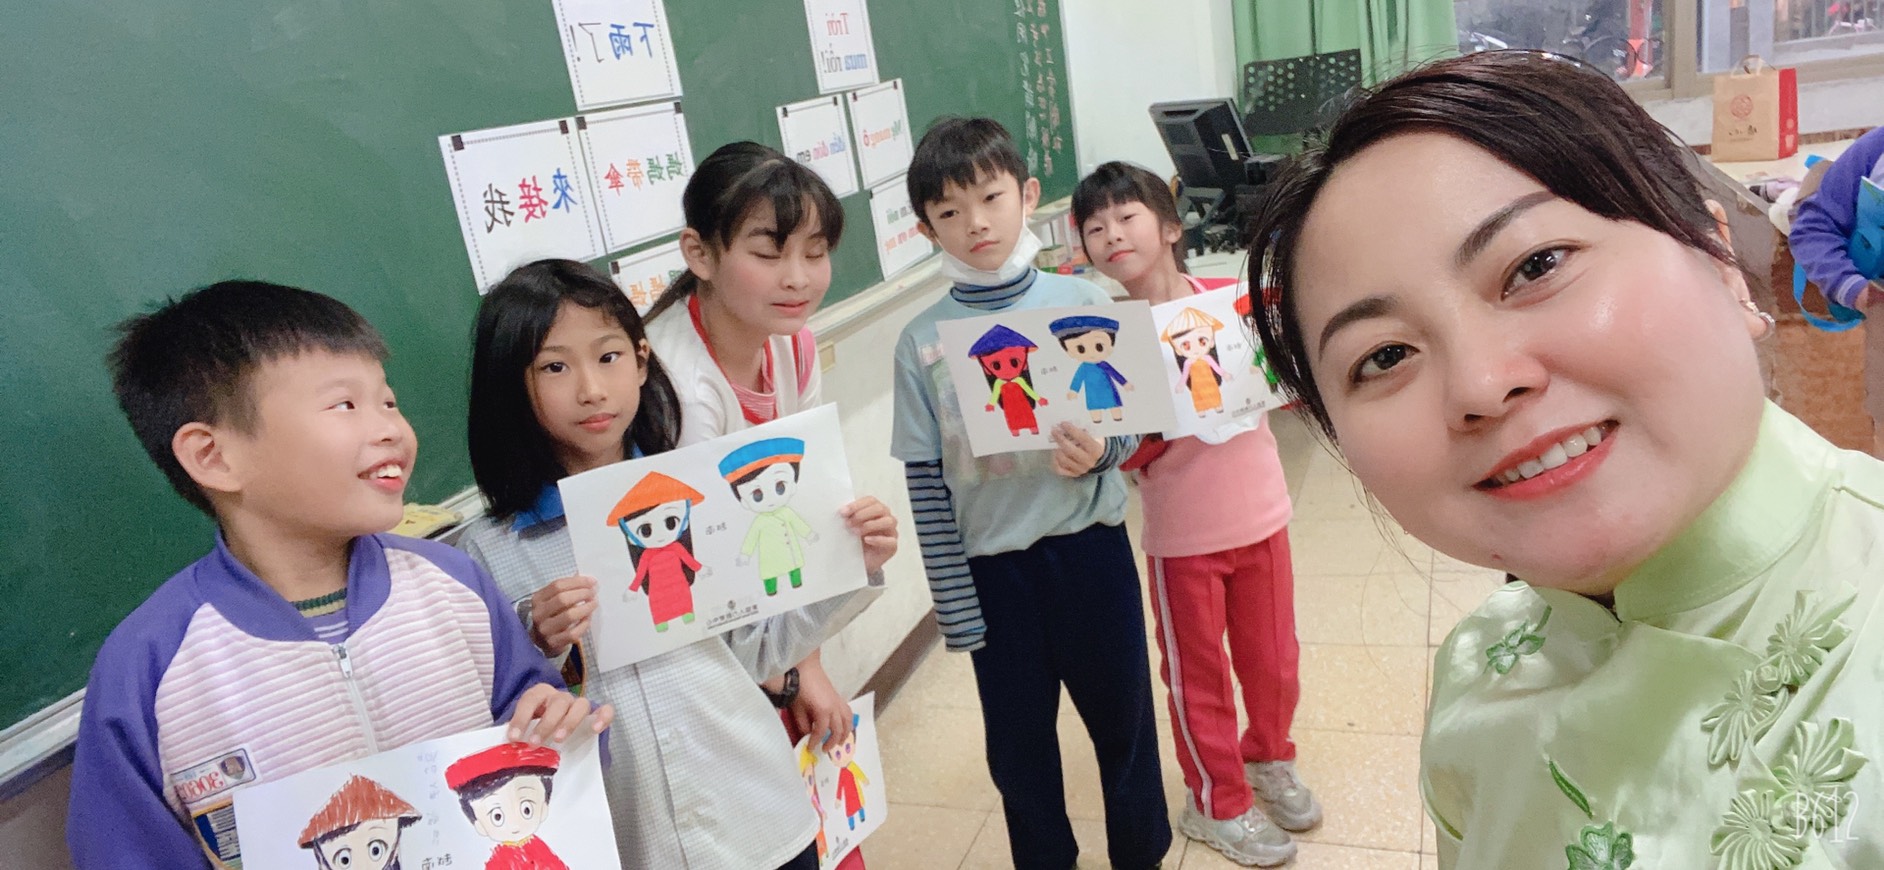 陳善明清老師教小朋友學越南語，她活潑樂觀的人格特質深受學生喜愛